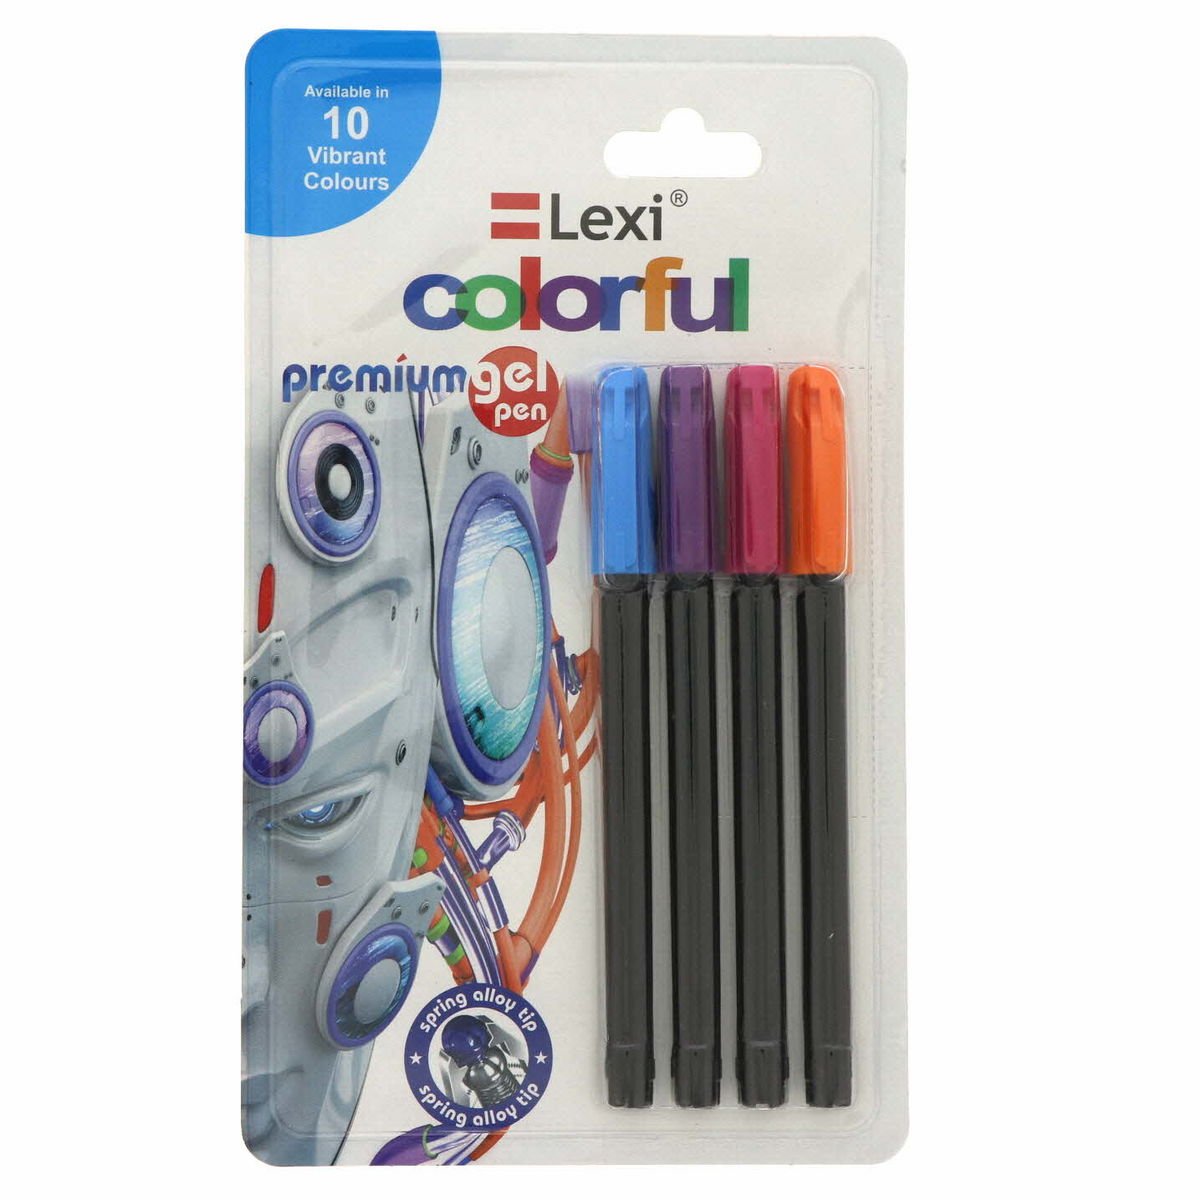 ليكسي أقلام حبر ملونة جل 4 حبات متعددة الألوان